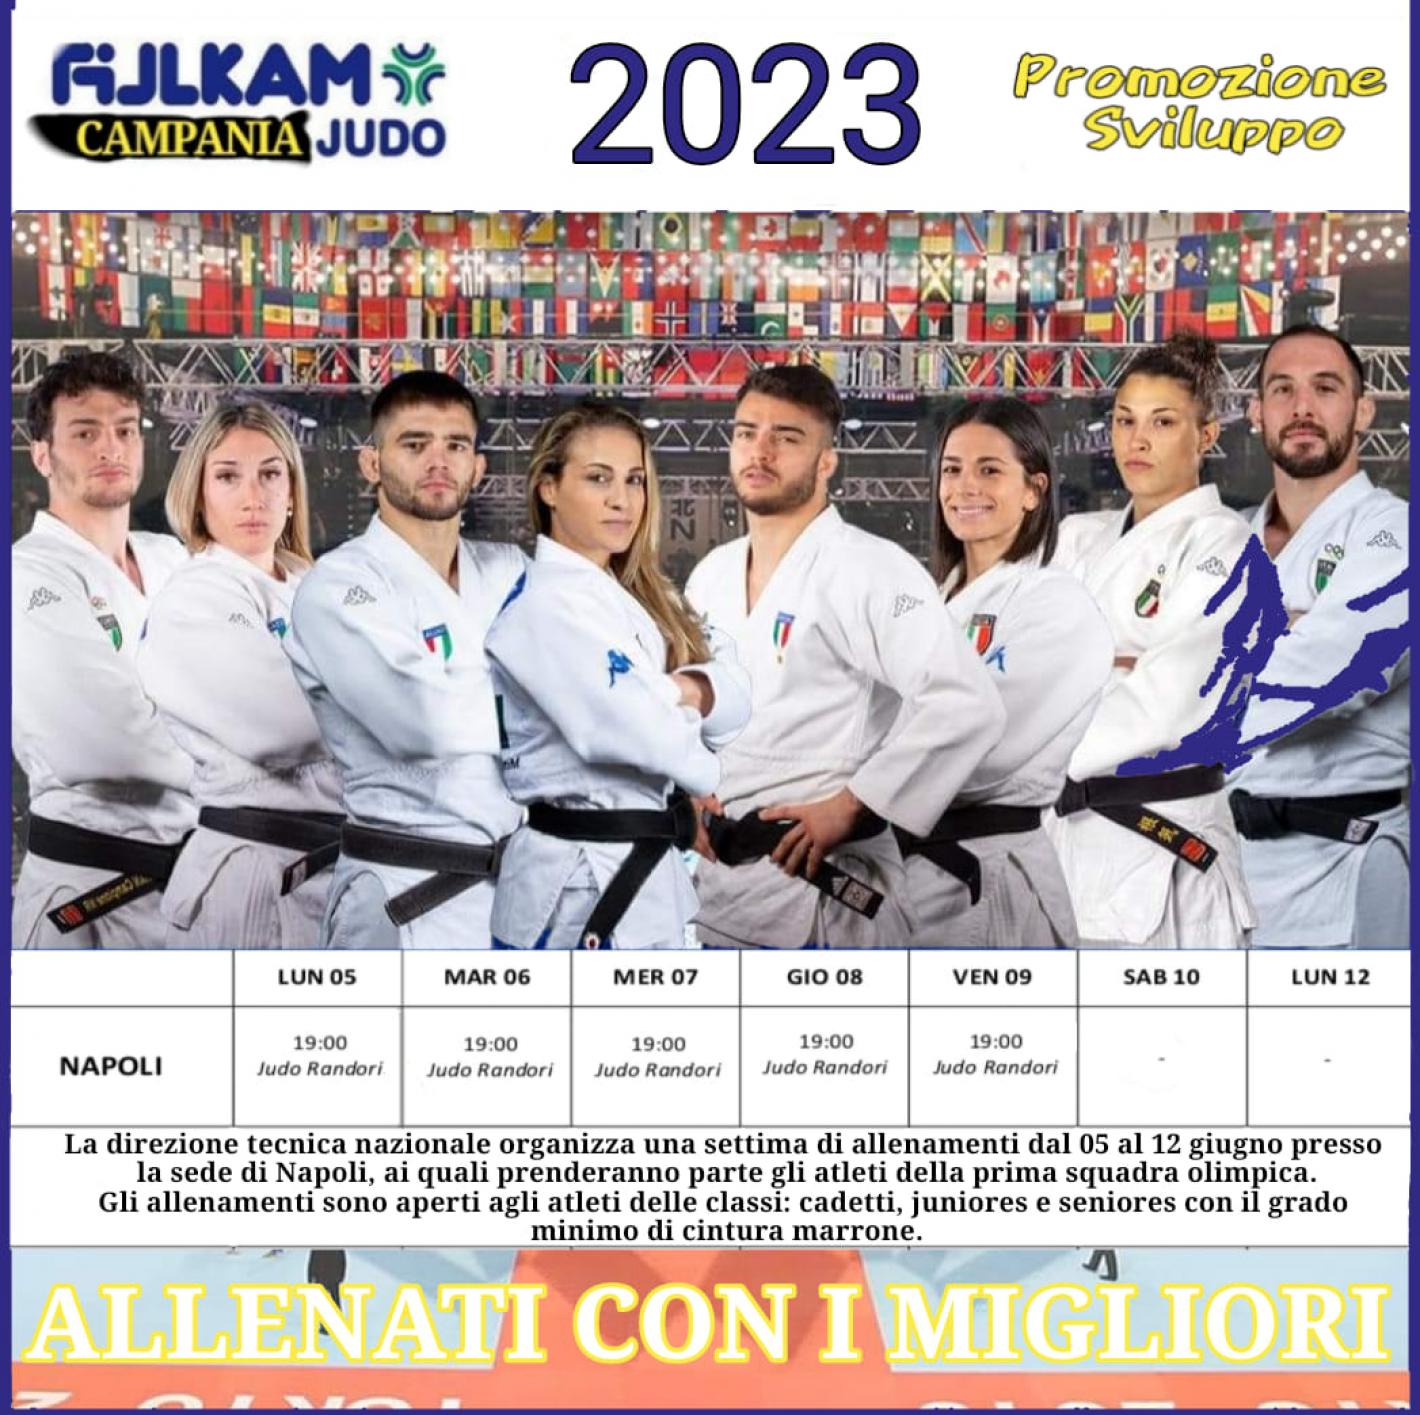 images/campania/campania2023/judo/giugno/ALLEN_MIGLIORI/medium/ALLEN.jpg